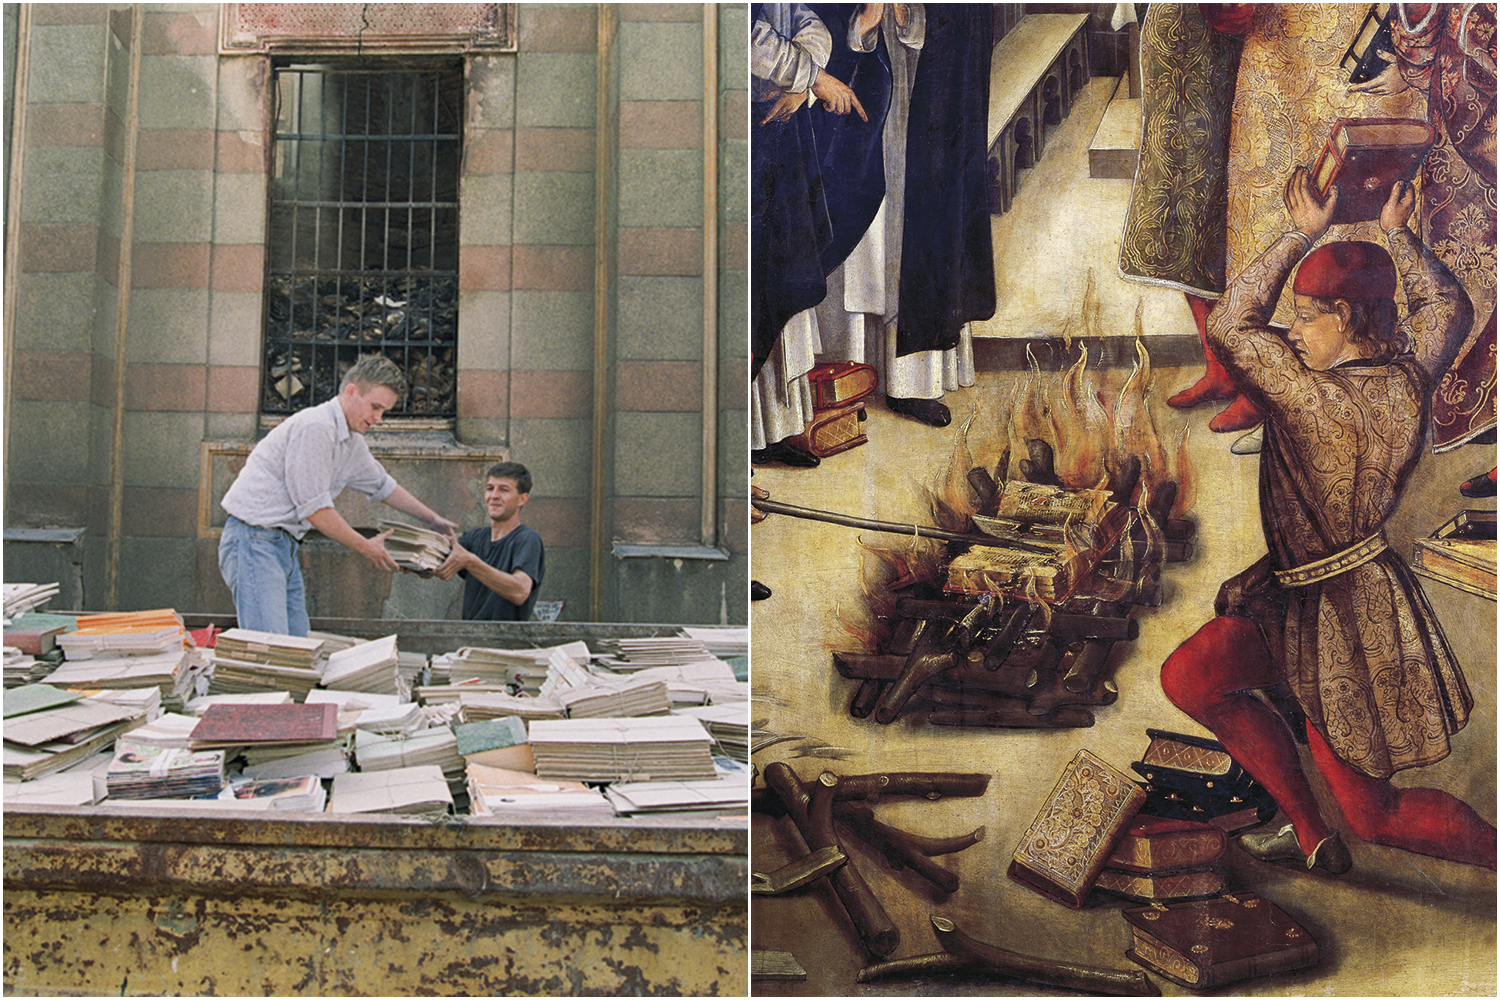 SOB ATAQUE - Biblioteca de Sarajevo (à esq.) e a Inquisição: amor e ódio -